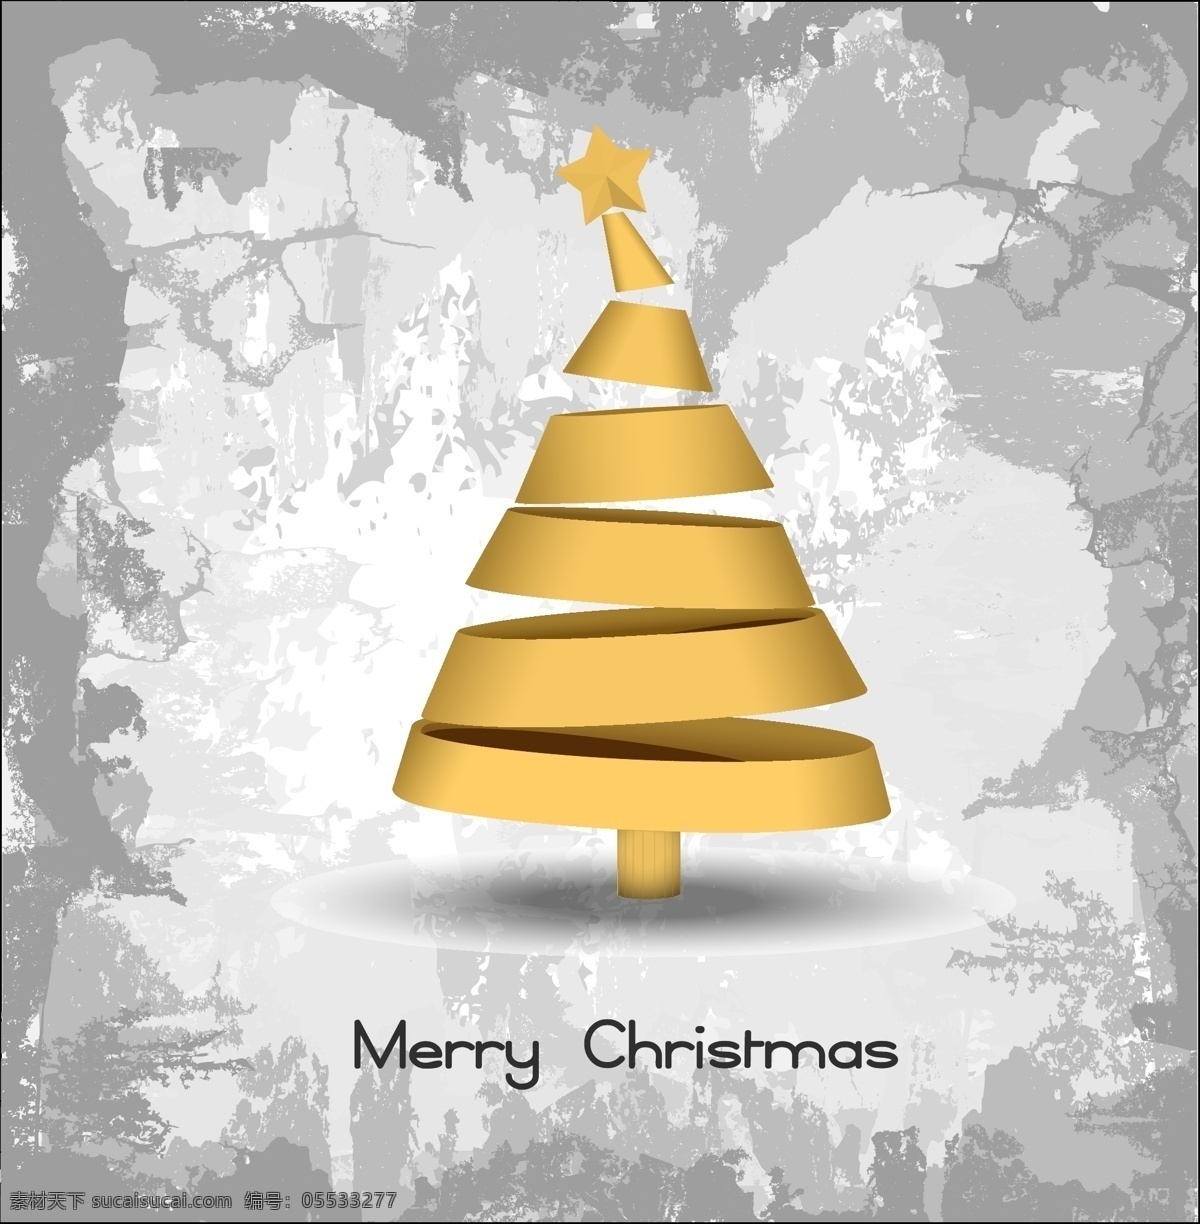 金色 圣诞树 矢量 灰色 星星 矢量素材 设计素材